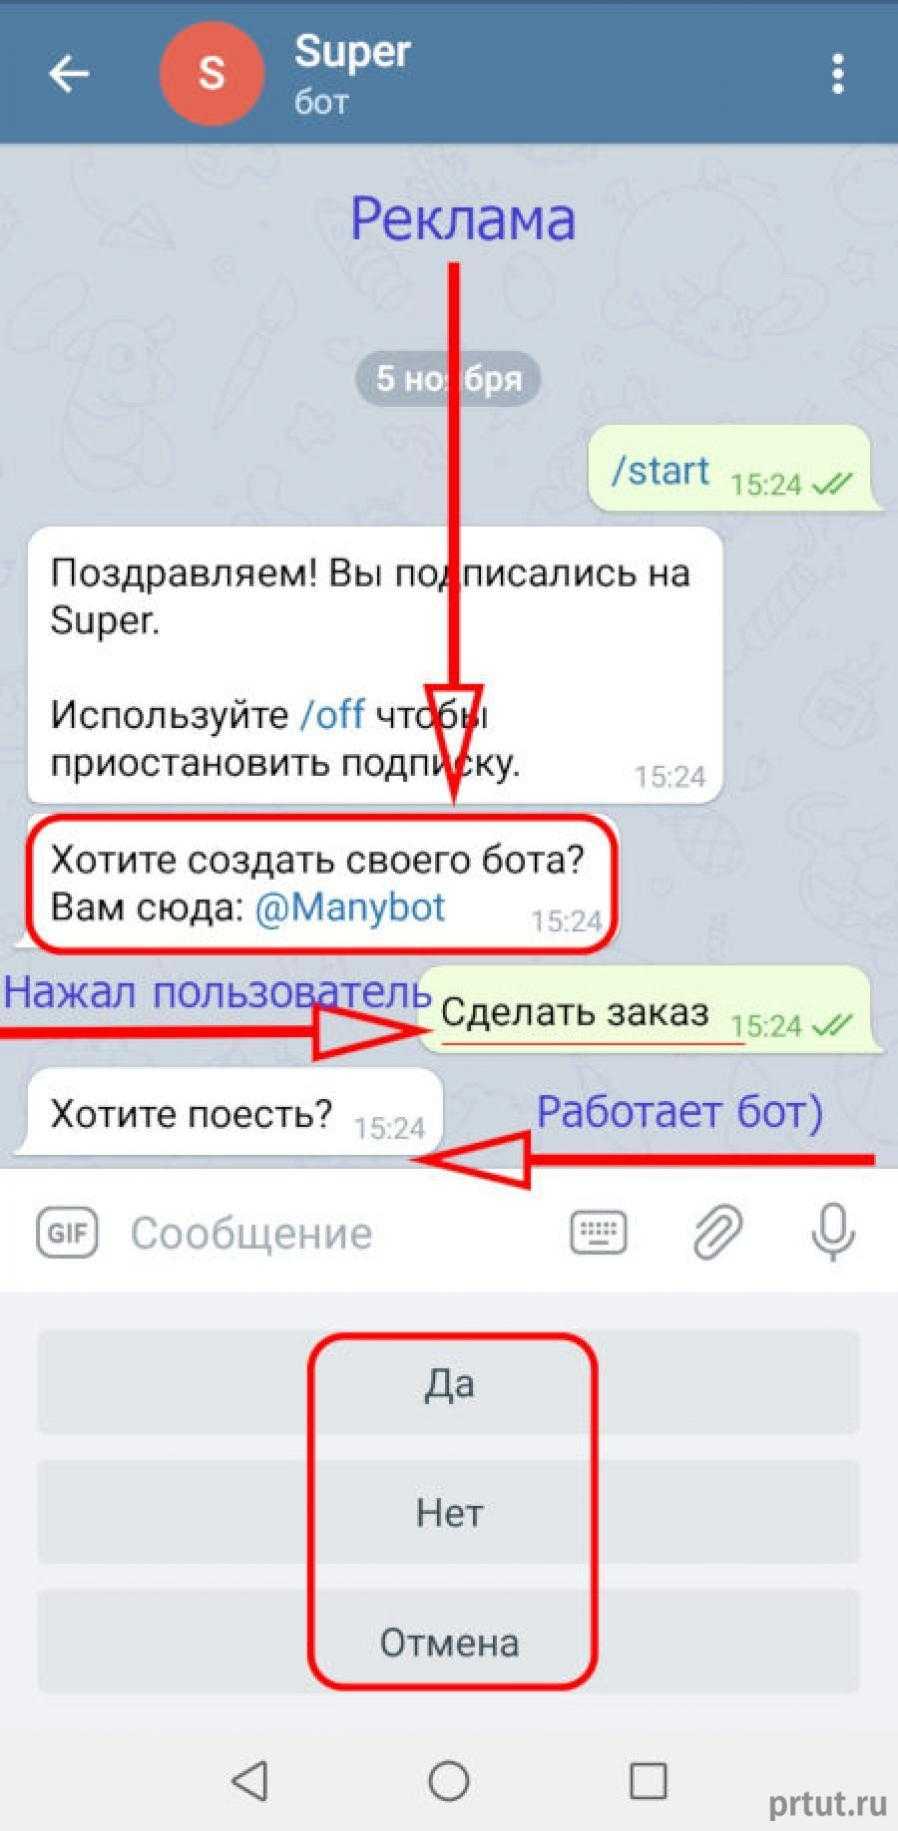 Как сделать телеграмм на русском языке на компьютер фото 38